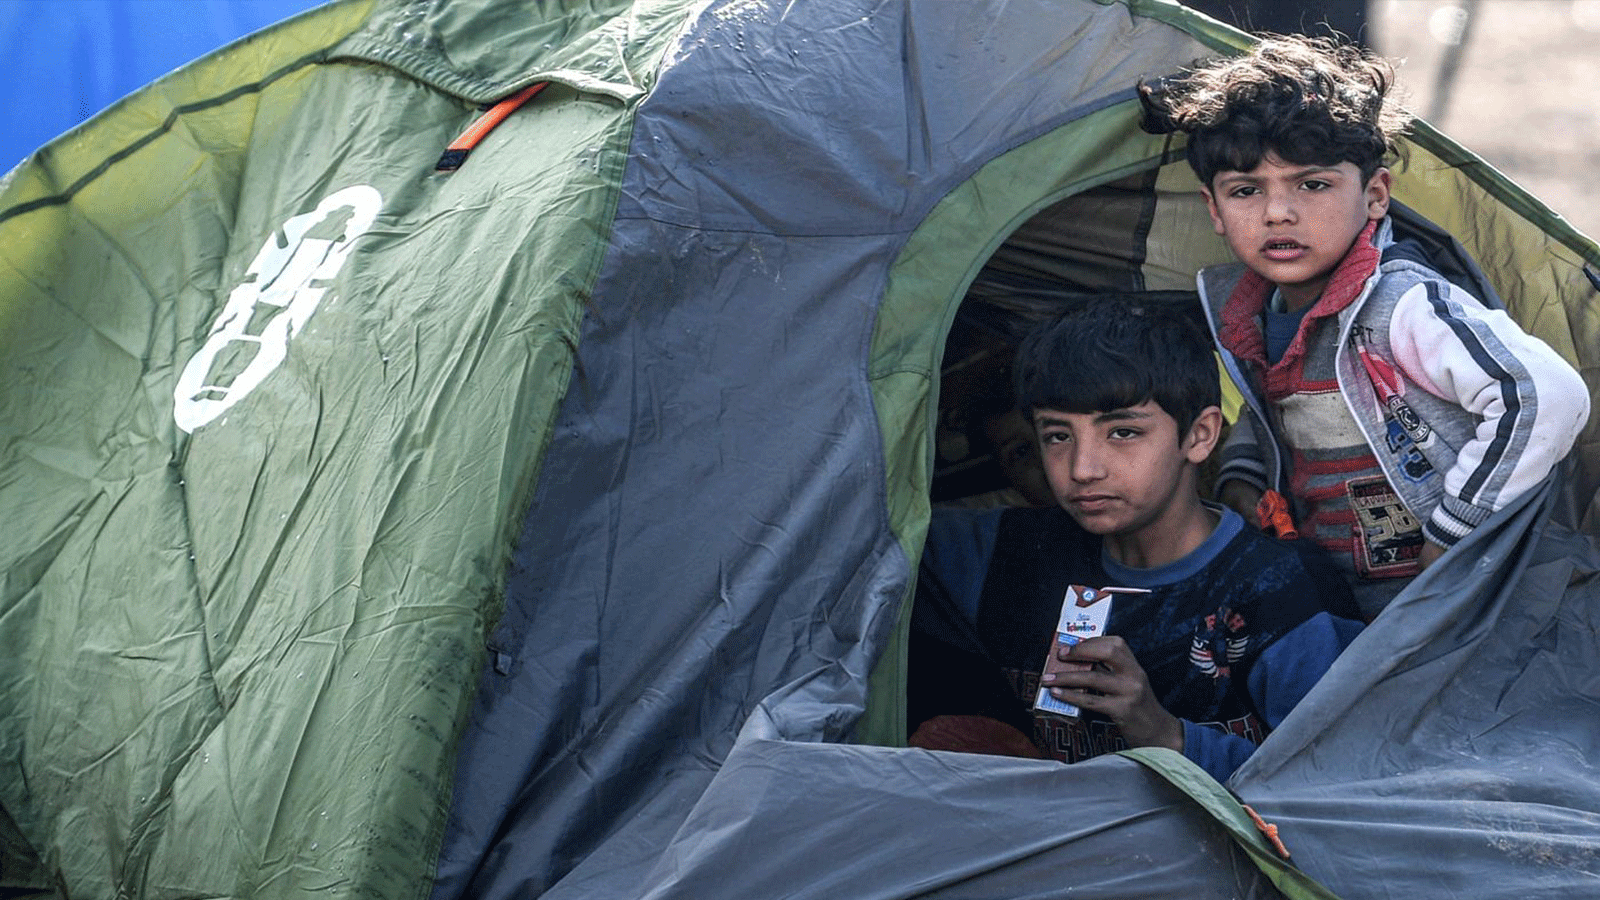 أطفال يجلسون في مأوى بالقرب من نهر تونكا المحاذي للطريق المؤدي إلى أوروبا من شمال غرب تركيا في 5 آذار/ مارس 2020